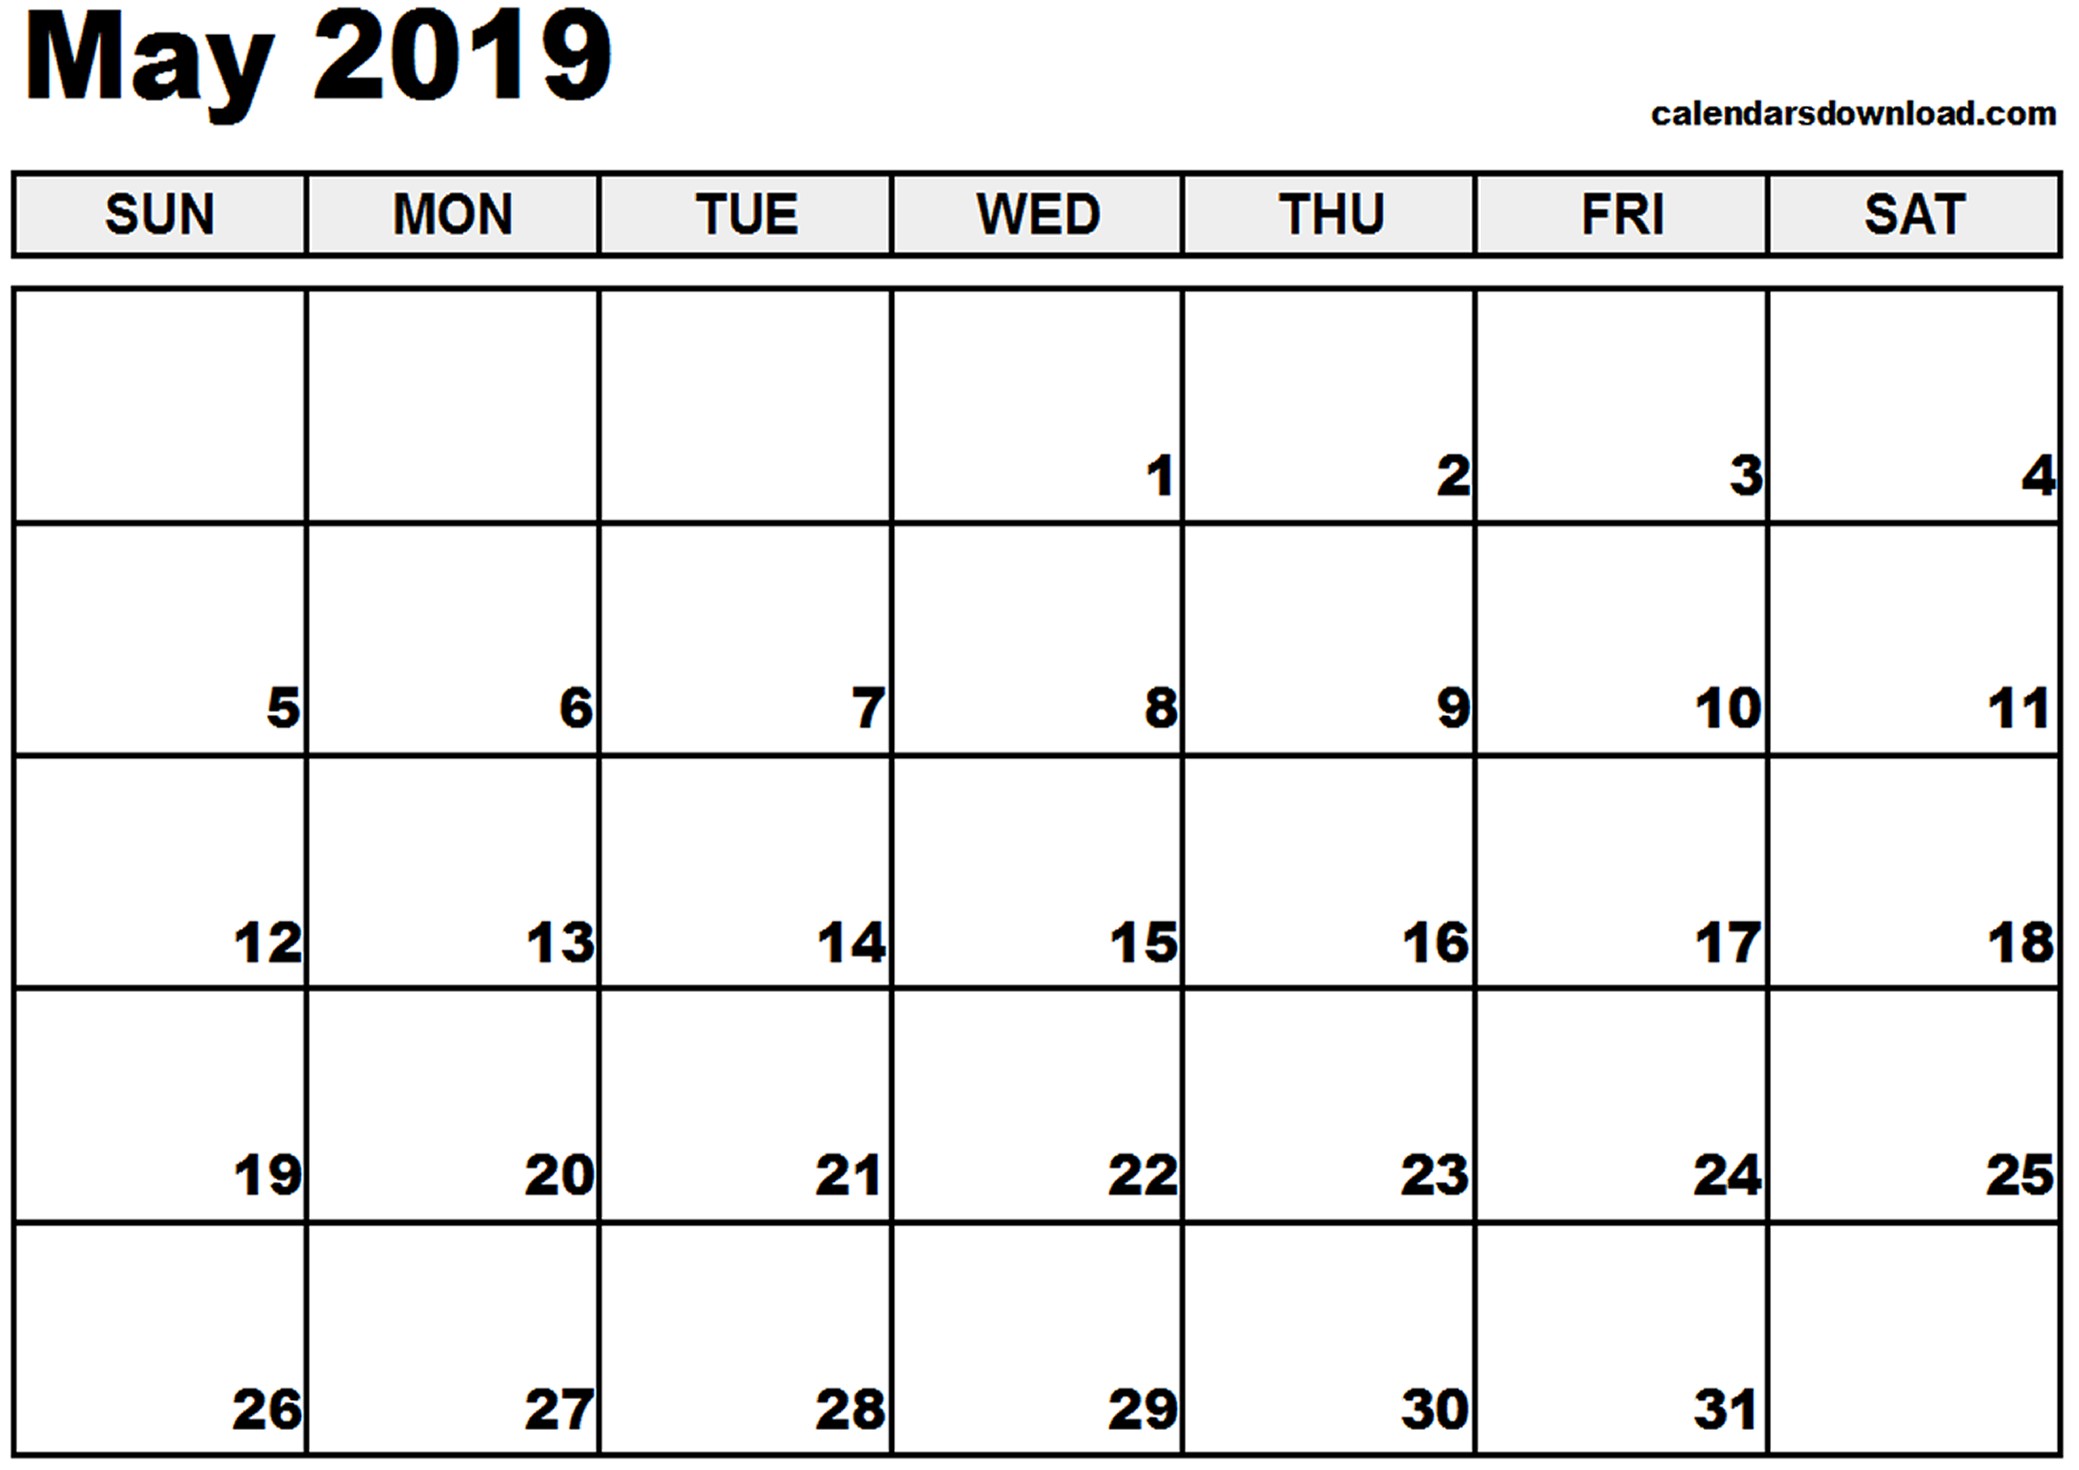 may 2019 calendar